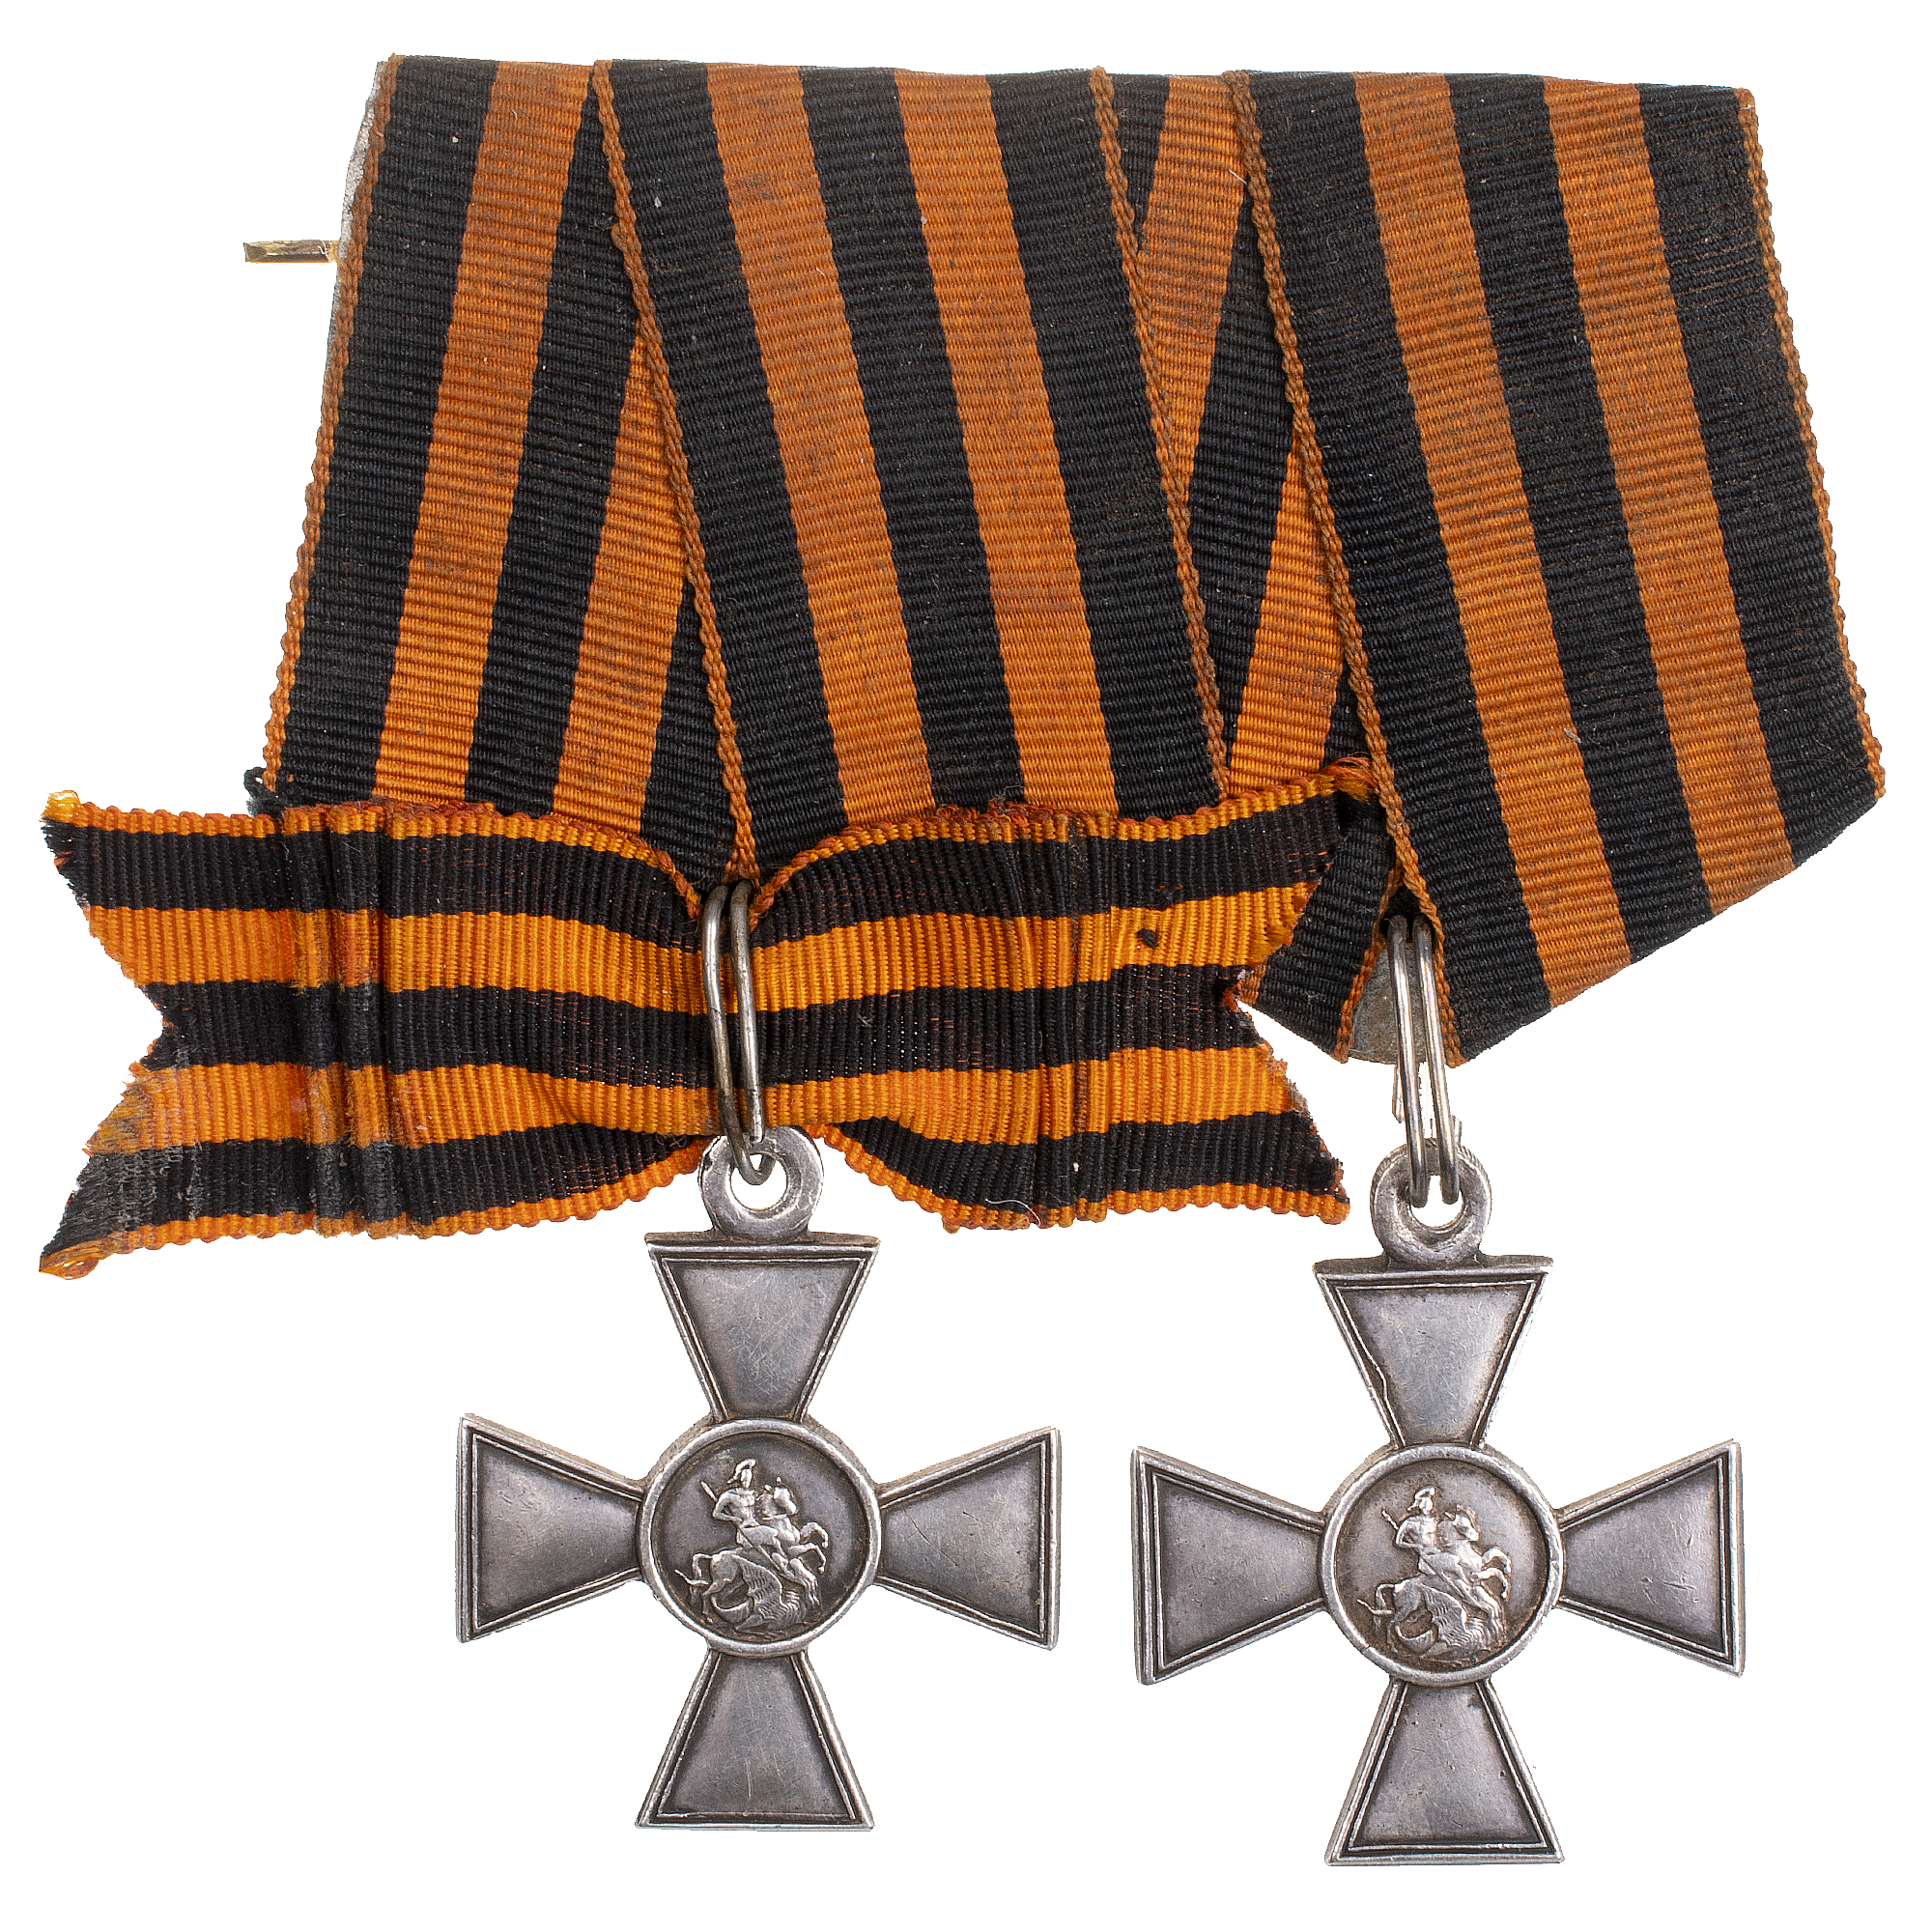 Наградная колодка на два Георгиевских Креста - ГК 3 ст 53.597 и ГК 4 ст 620.122 (19 пехотный Костромской полк).